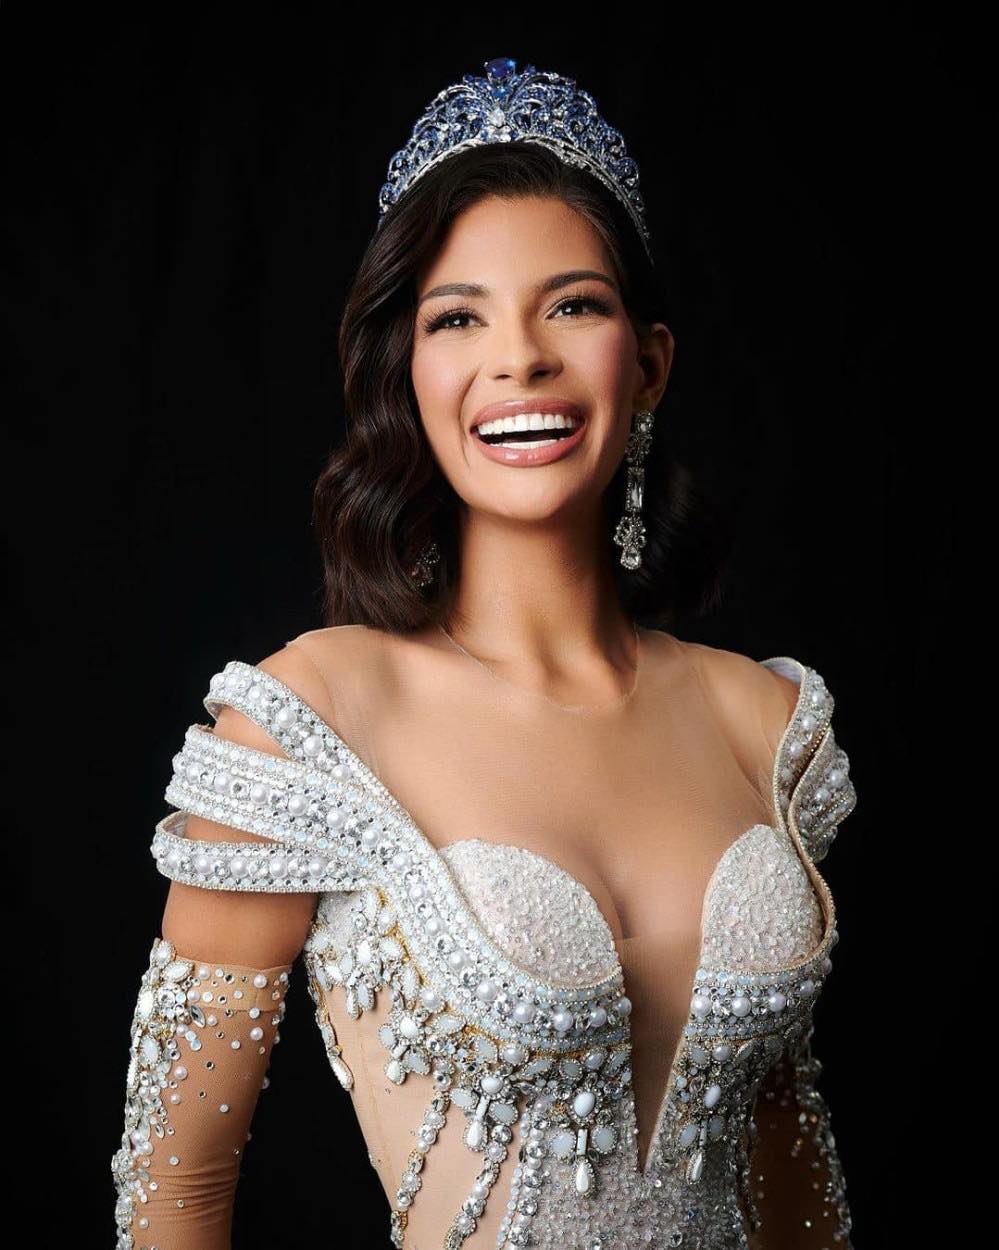 Tân Miss Universe 2023 Sheynnis Palacios gây tranh cãi vì ảnh kém sắc sau đăng quang - Ảnh 3.